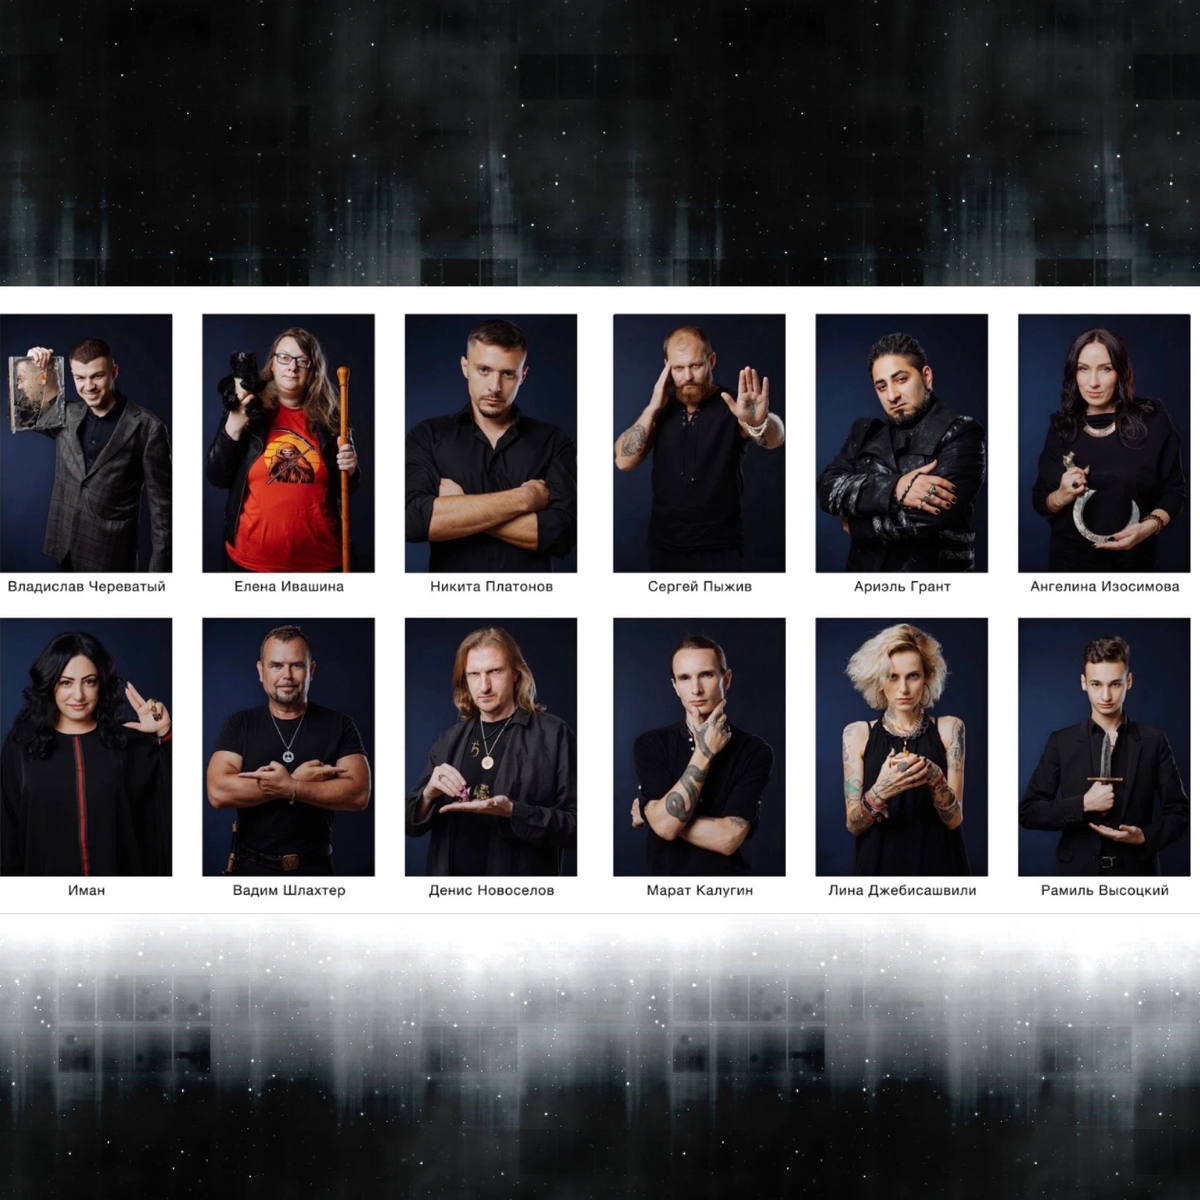 Участники 20 сезона битвы экстрасенсов список с фото